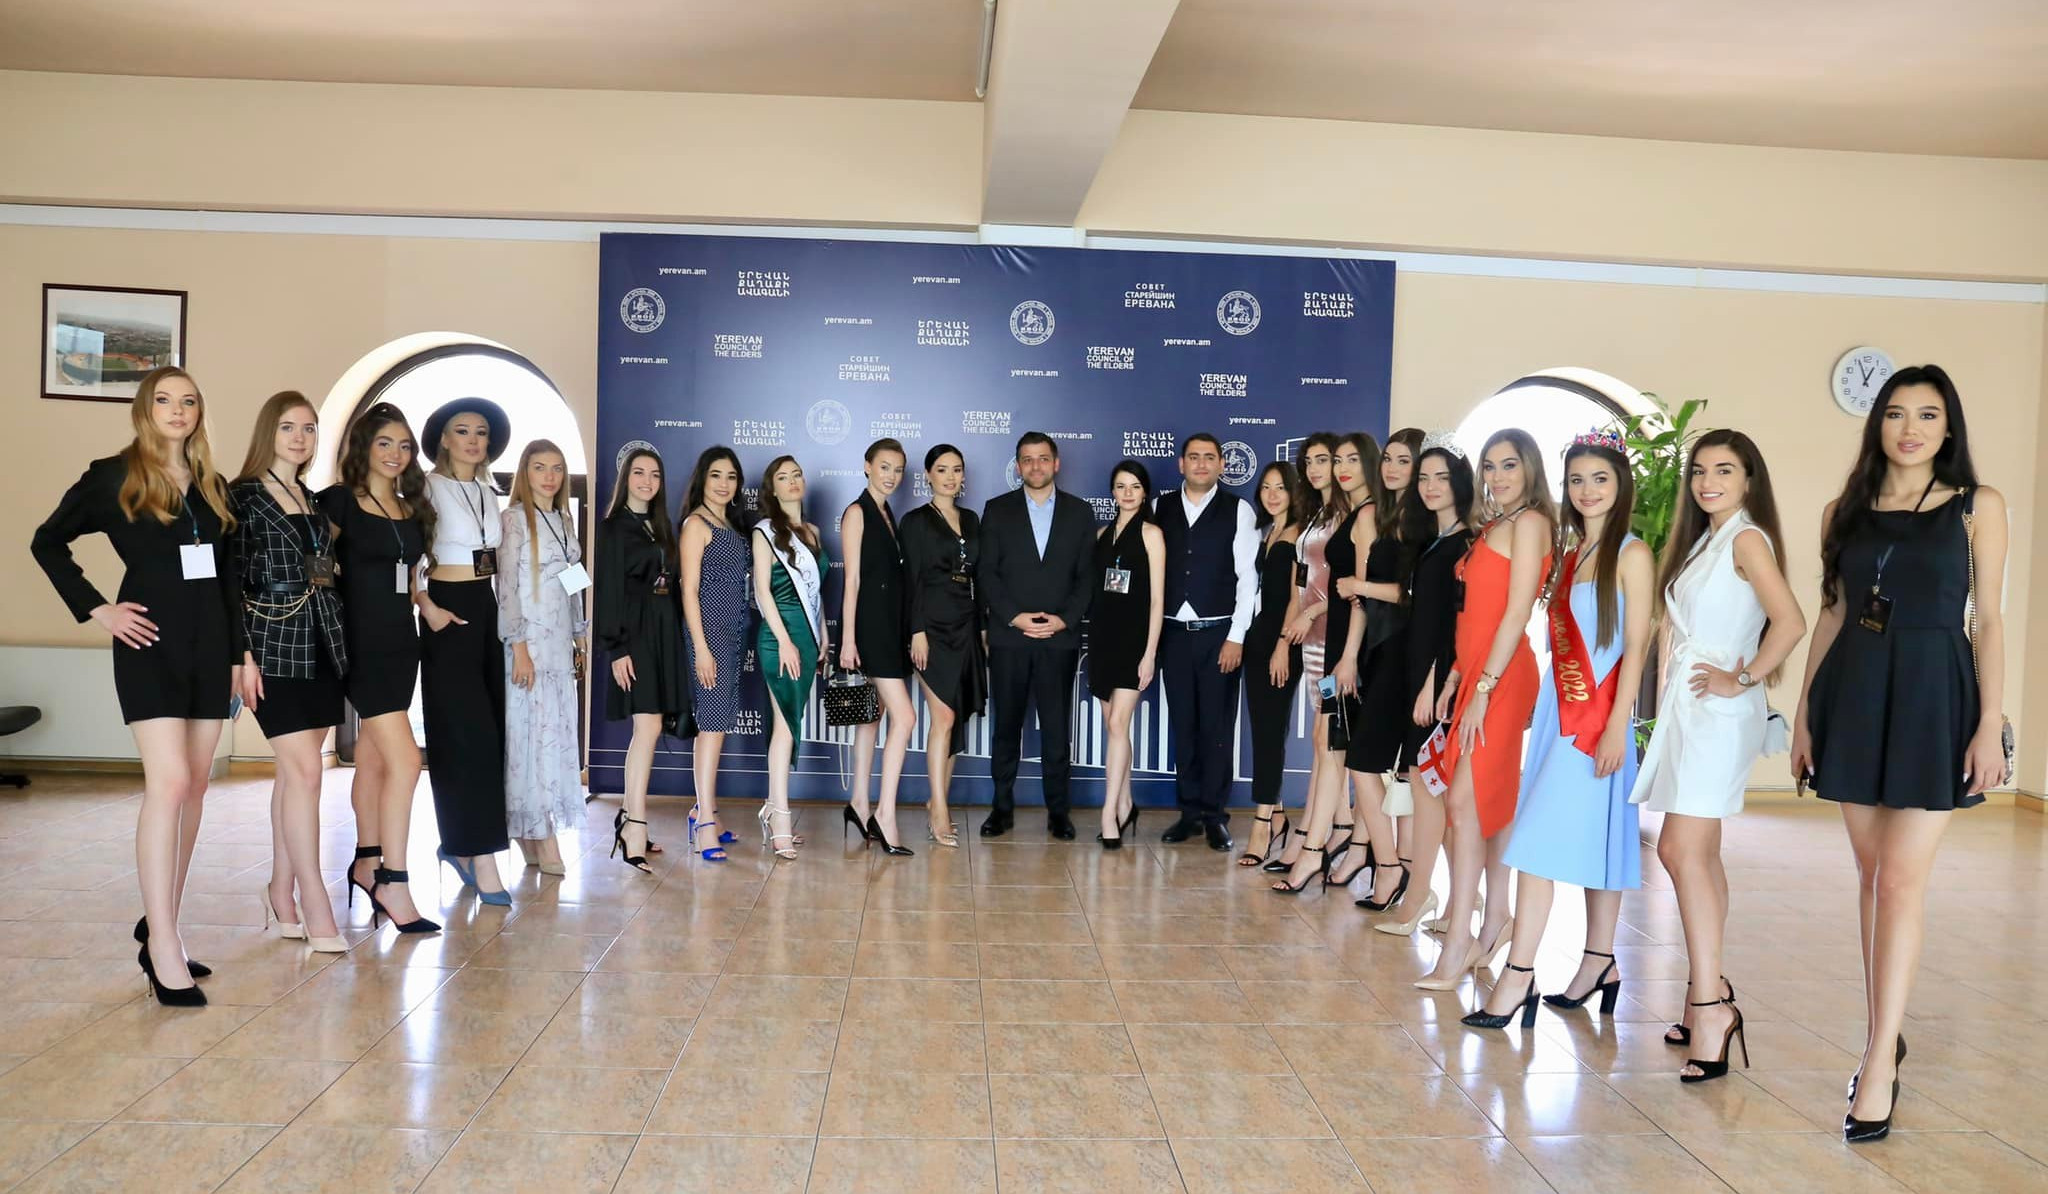 Այս տարի Երևանում կանցկացվի «Միսս ԱՊՀ 2022» միջազգային գեղեցկության մրցույթը